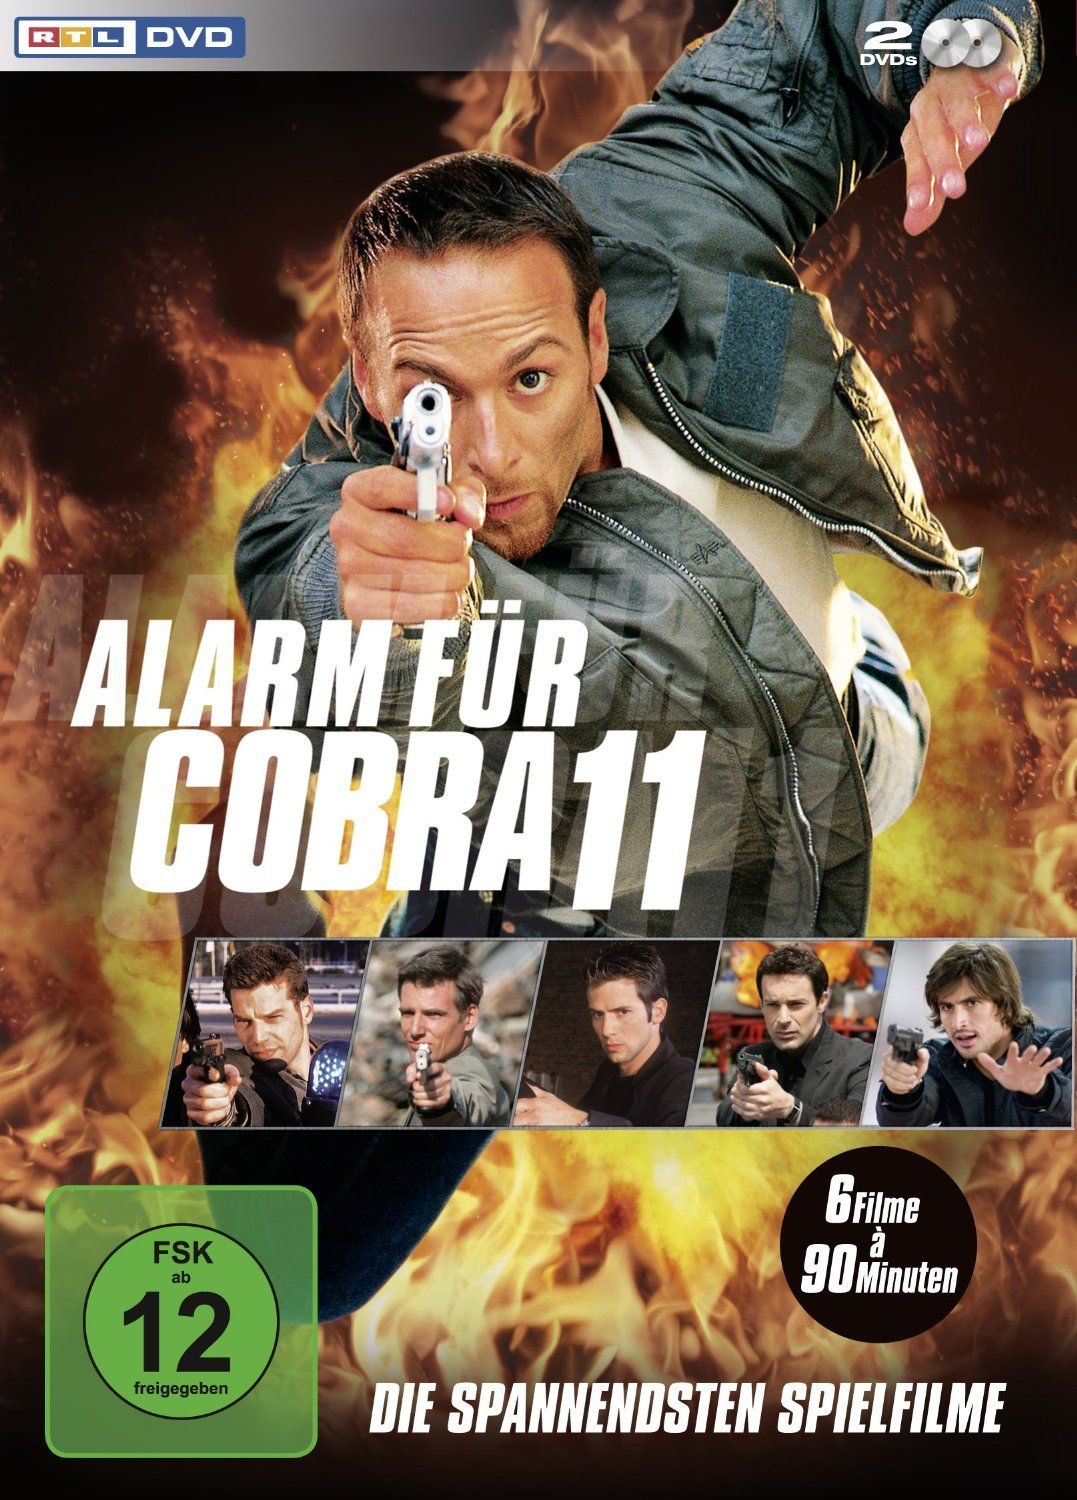 Image of Alarm für Cobra 11 - Die spannendsten Spielfilme